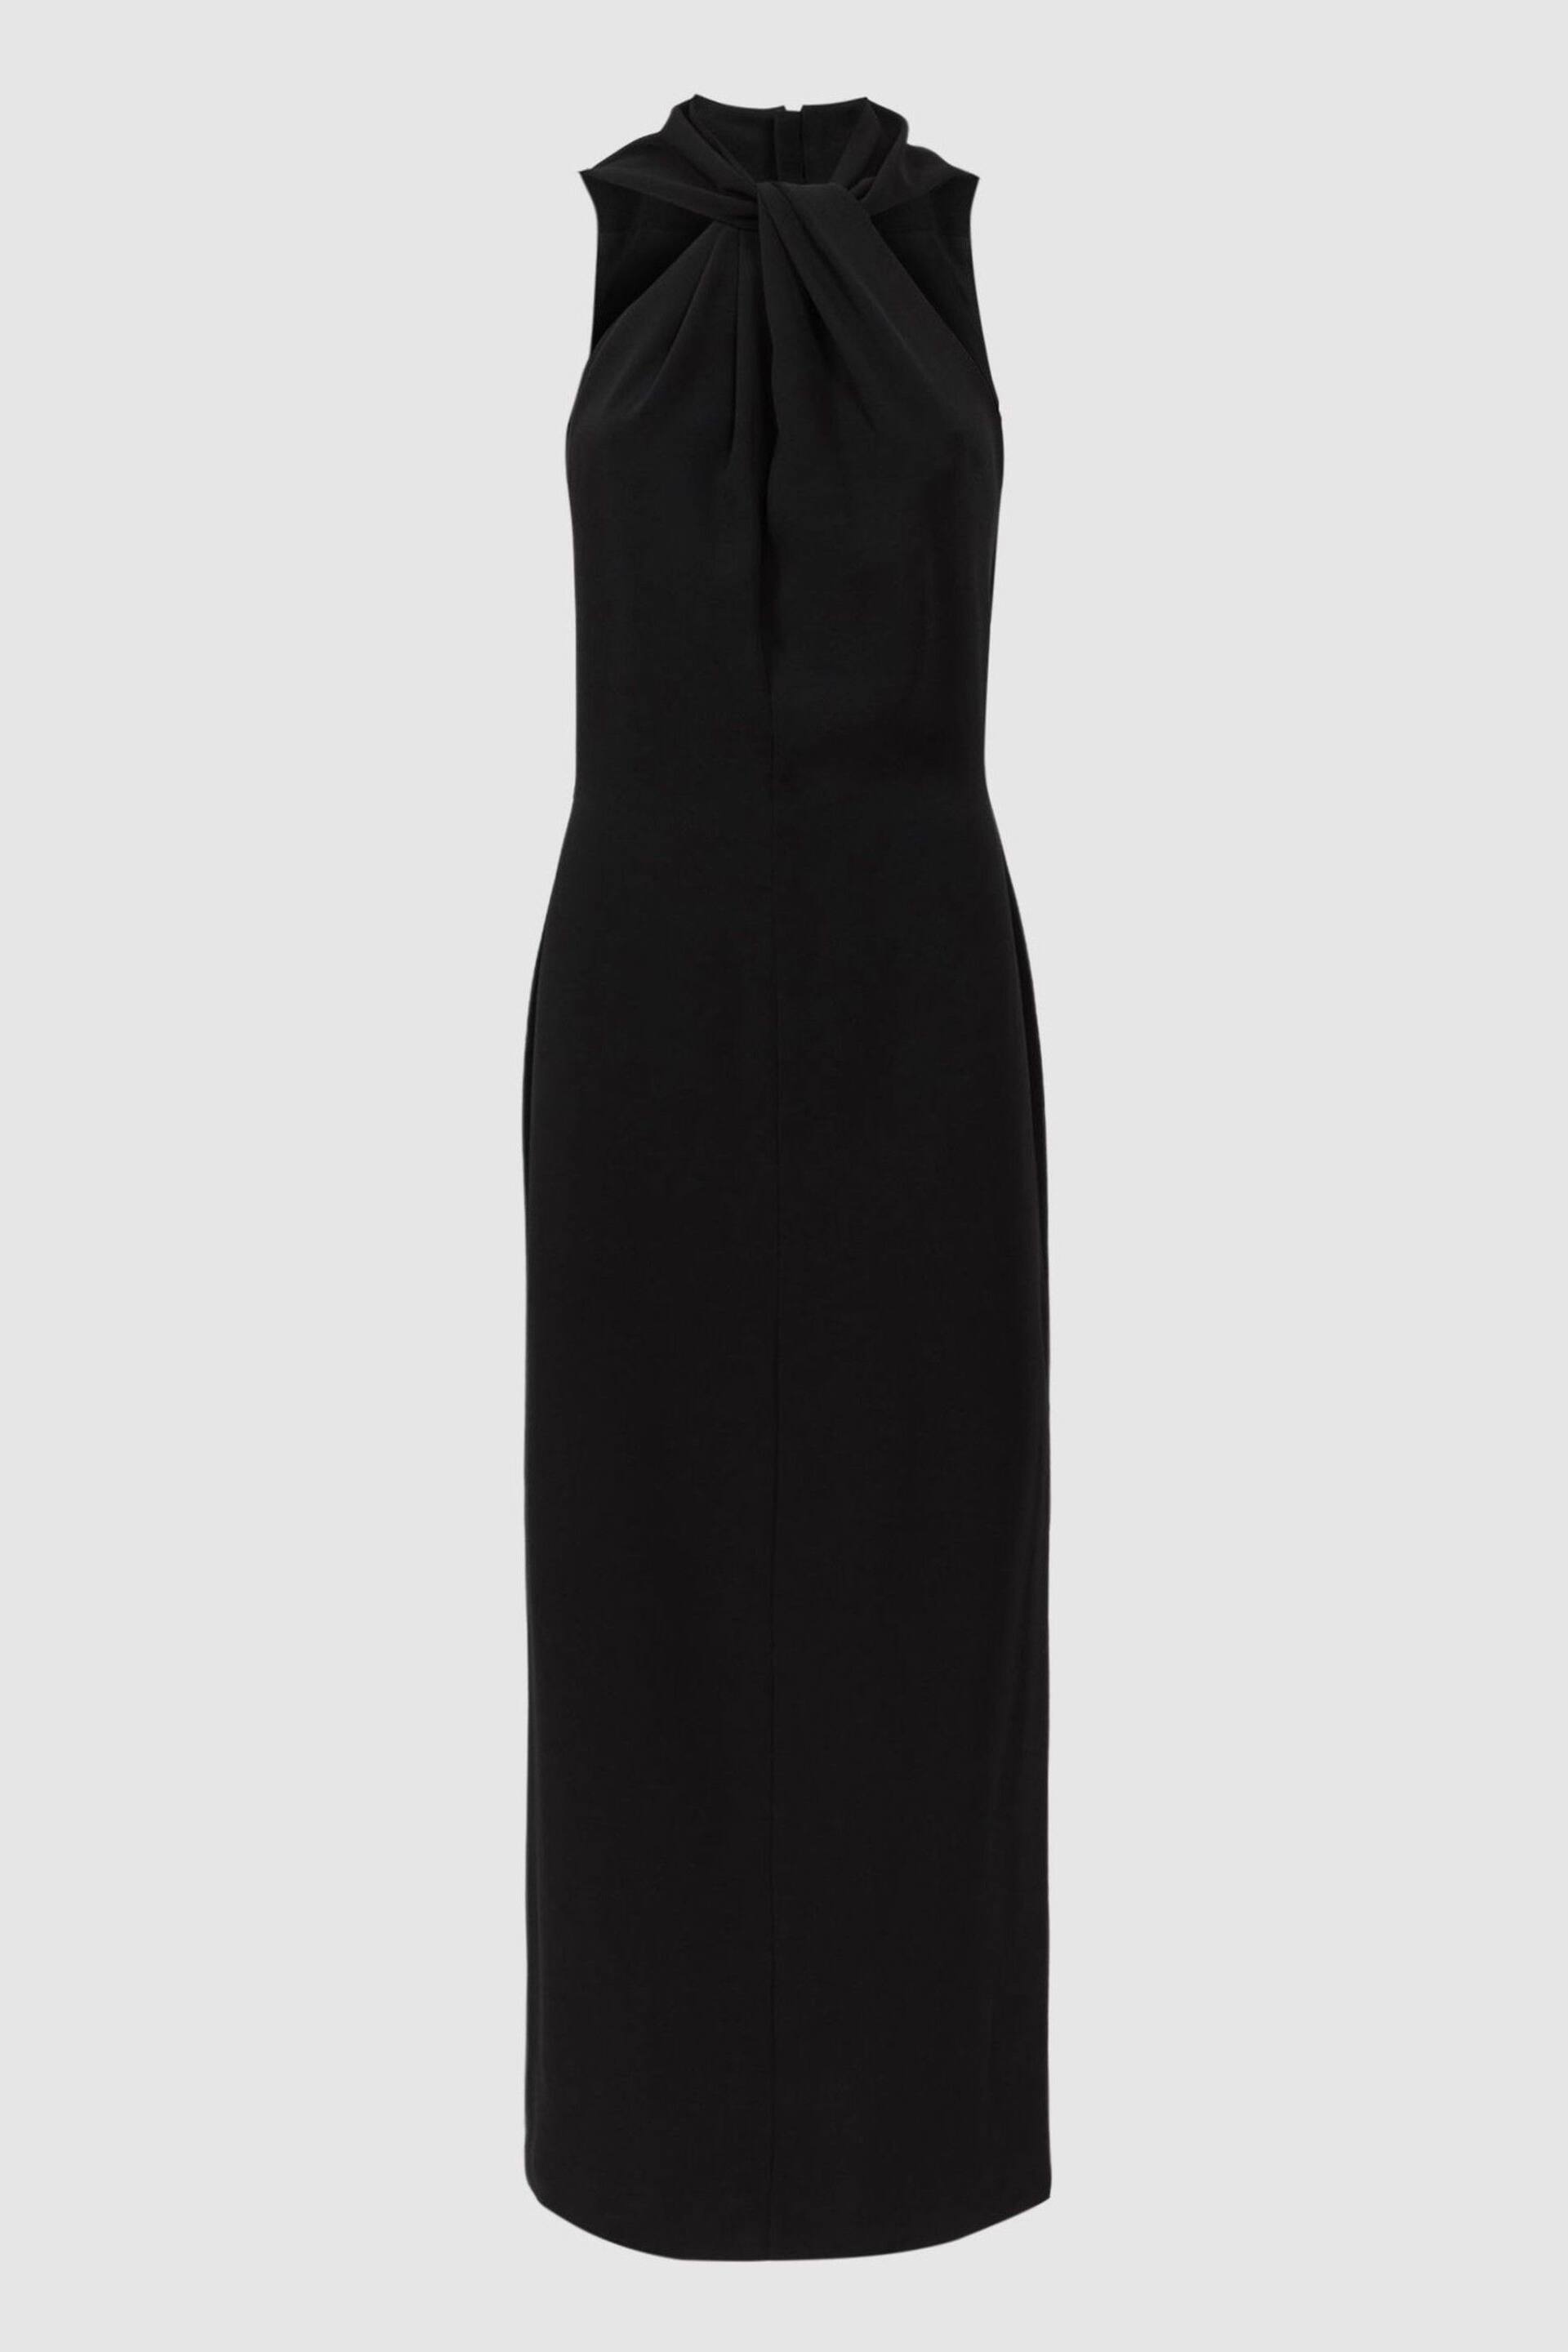 Reiss Black Talulah Atelier Halter Neck Midi Dress - Image 3 of 4